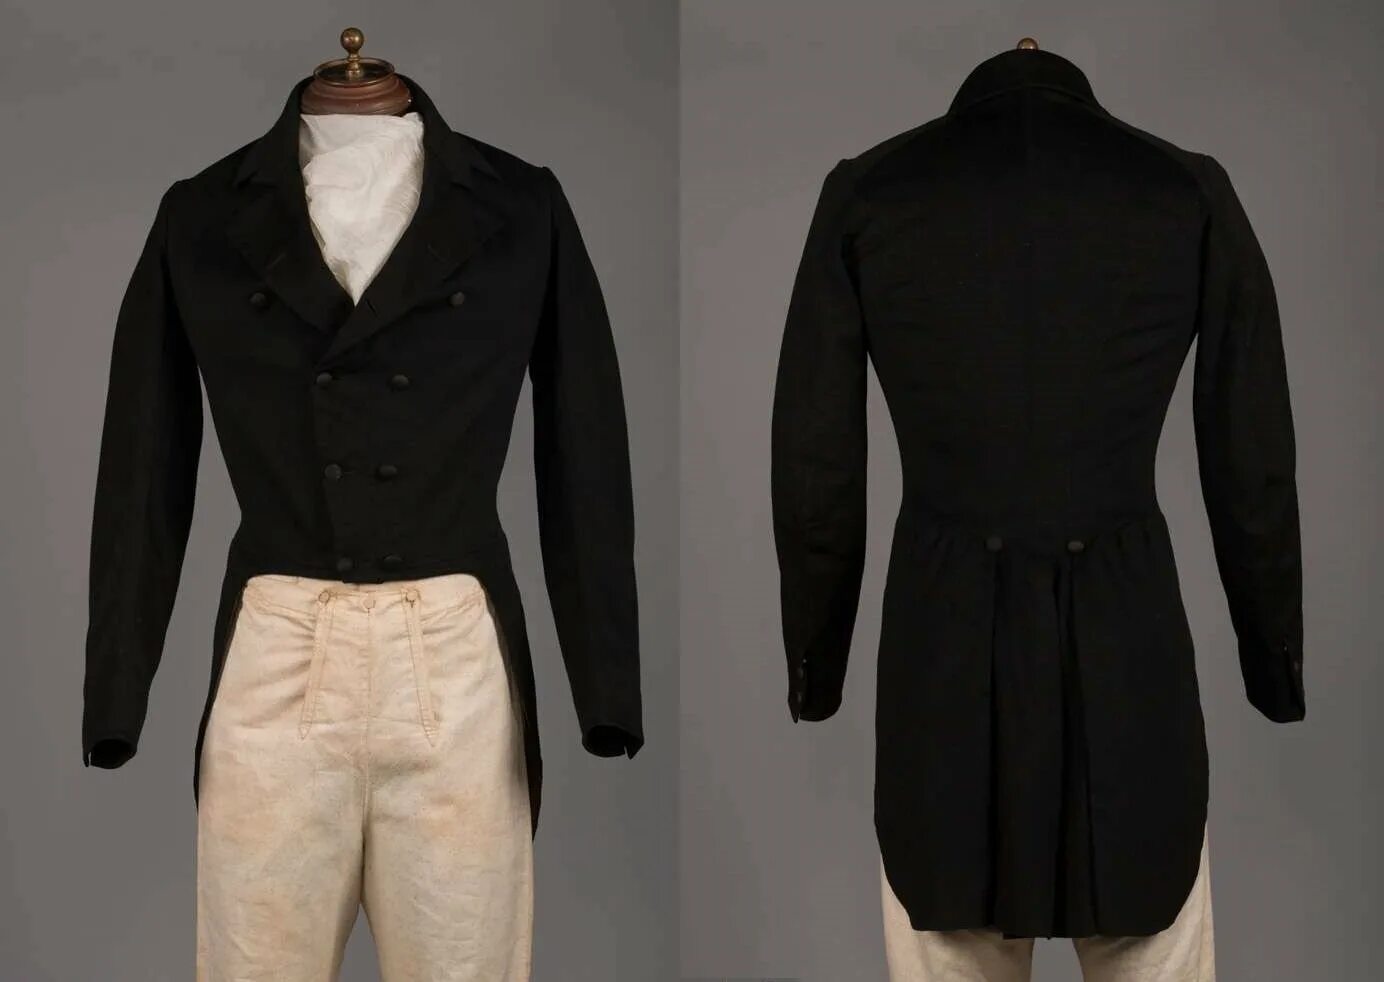 Сюртук также считался верхней одеждой. Фрак 1830х. Фрак одежда мужская 19 век.